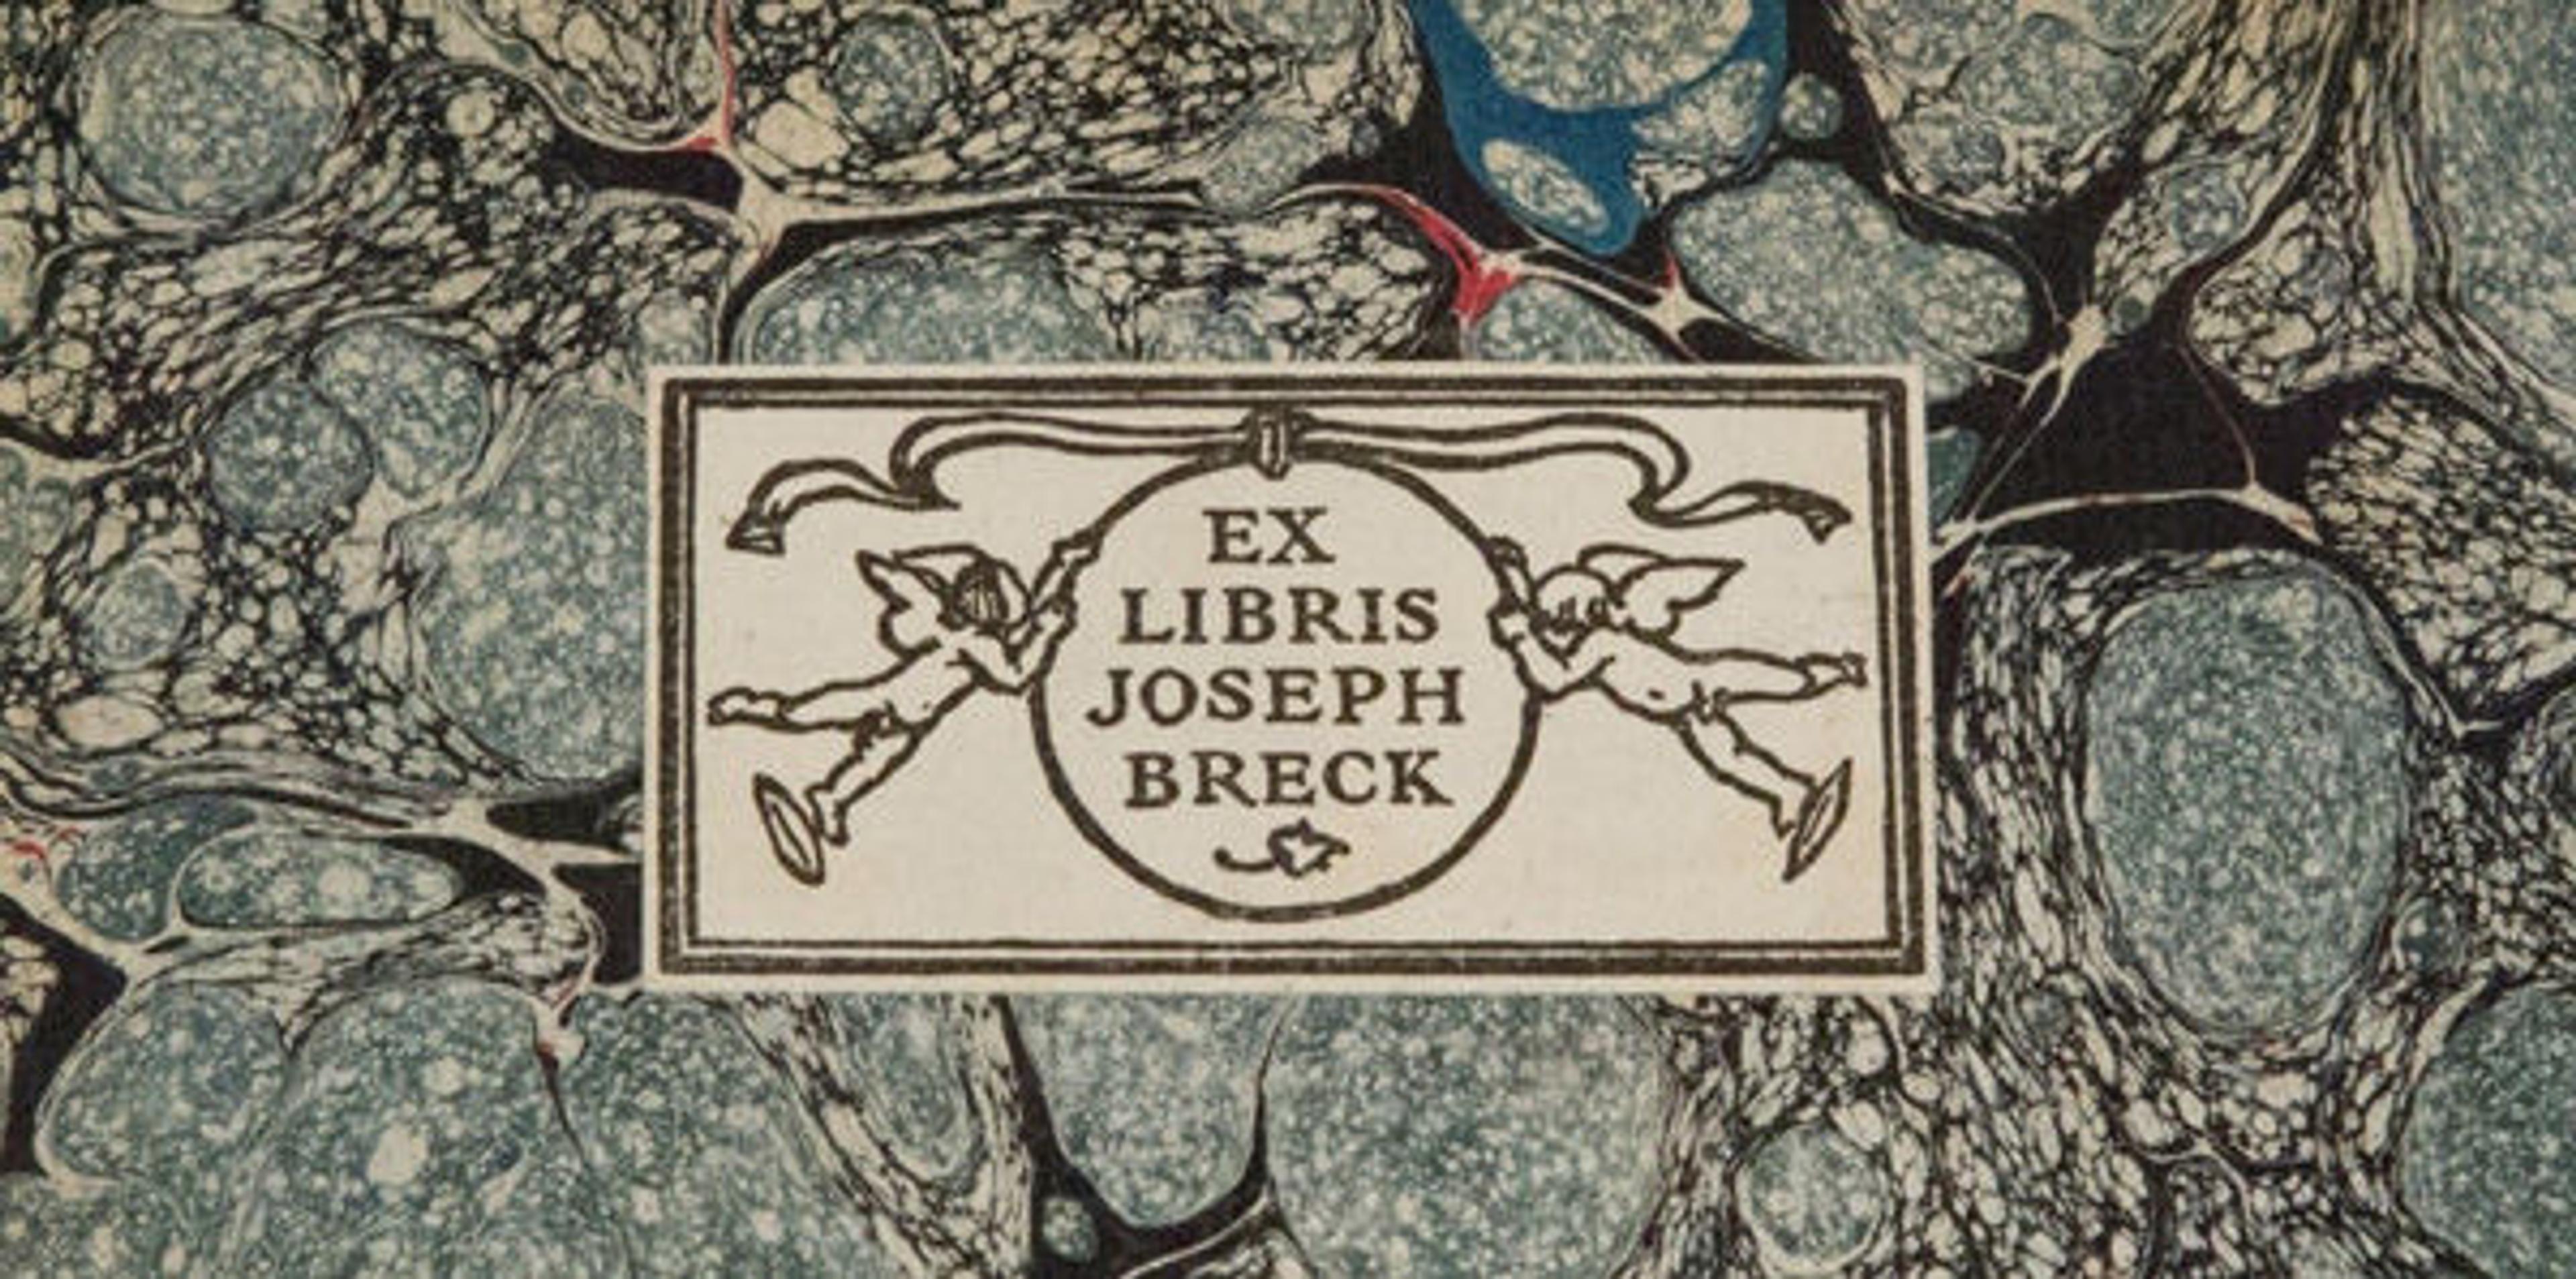 Breck bookplate